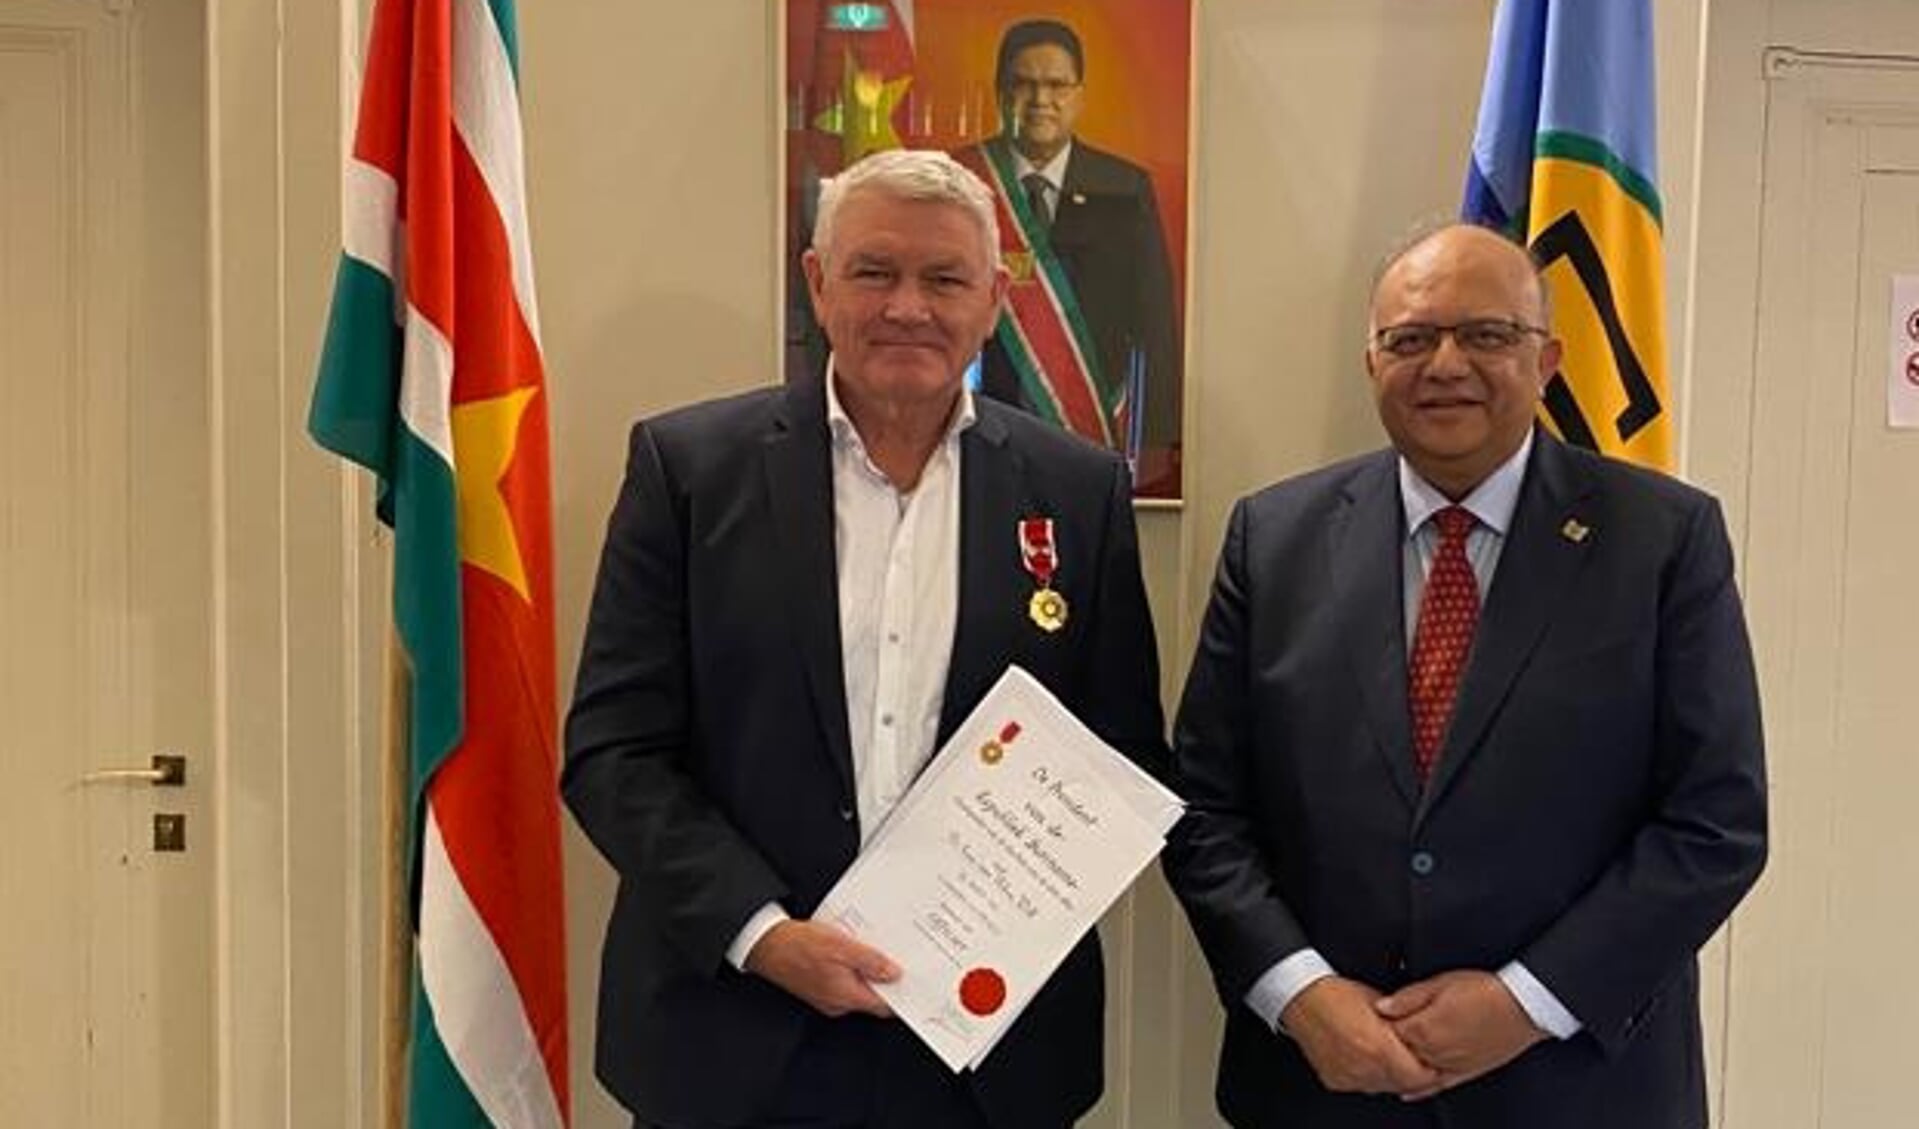 Will van Rhee ontving de oorkonde en de onderscheiding uit handen van de ambassadeur van Suriname, mr. Rajendre Khargi.